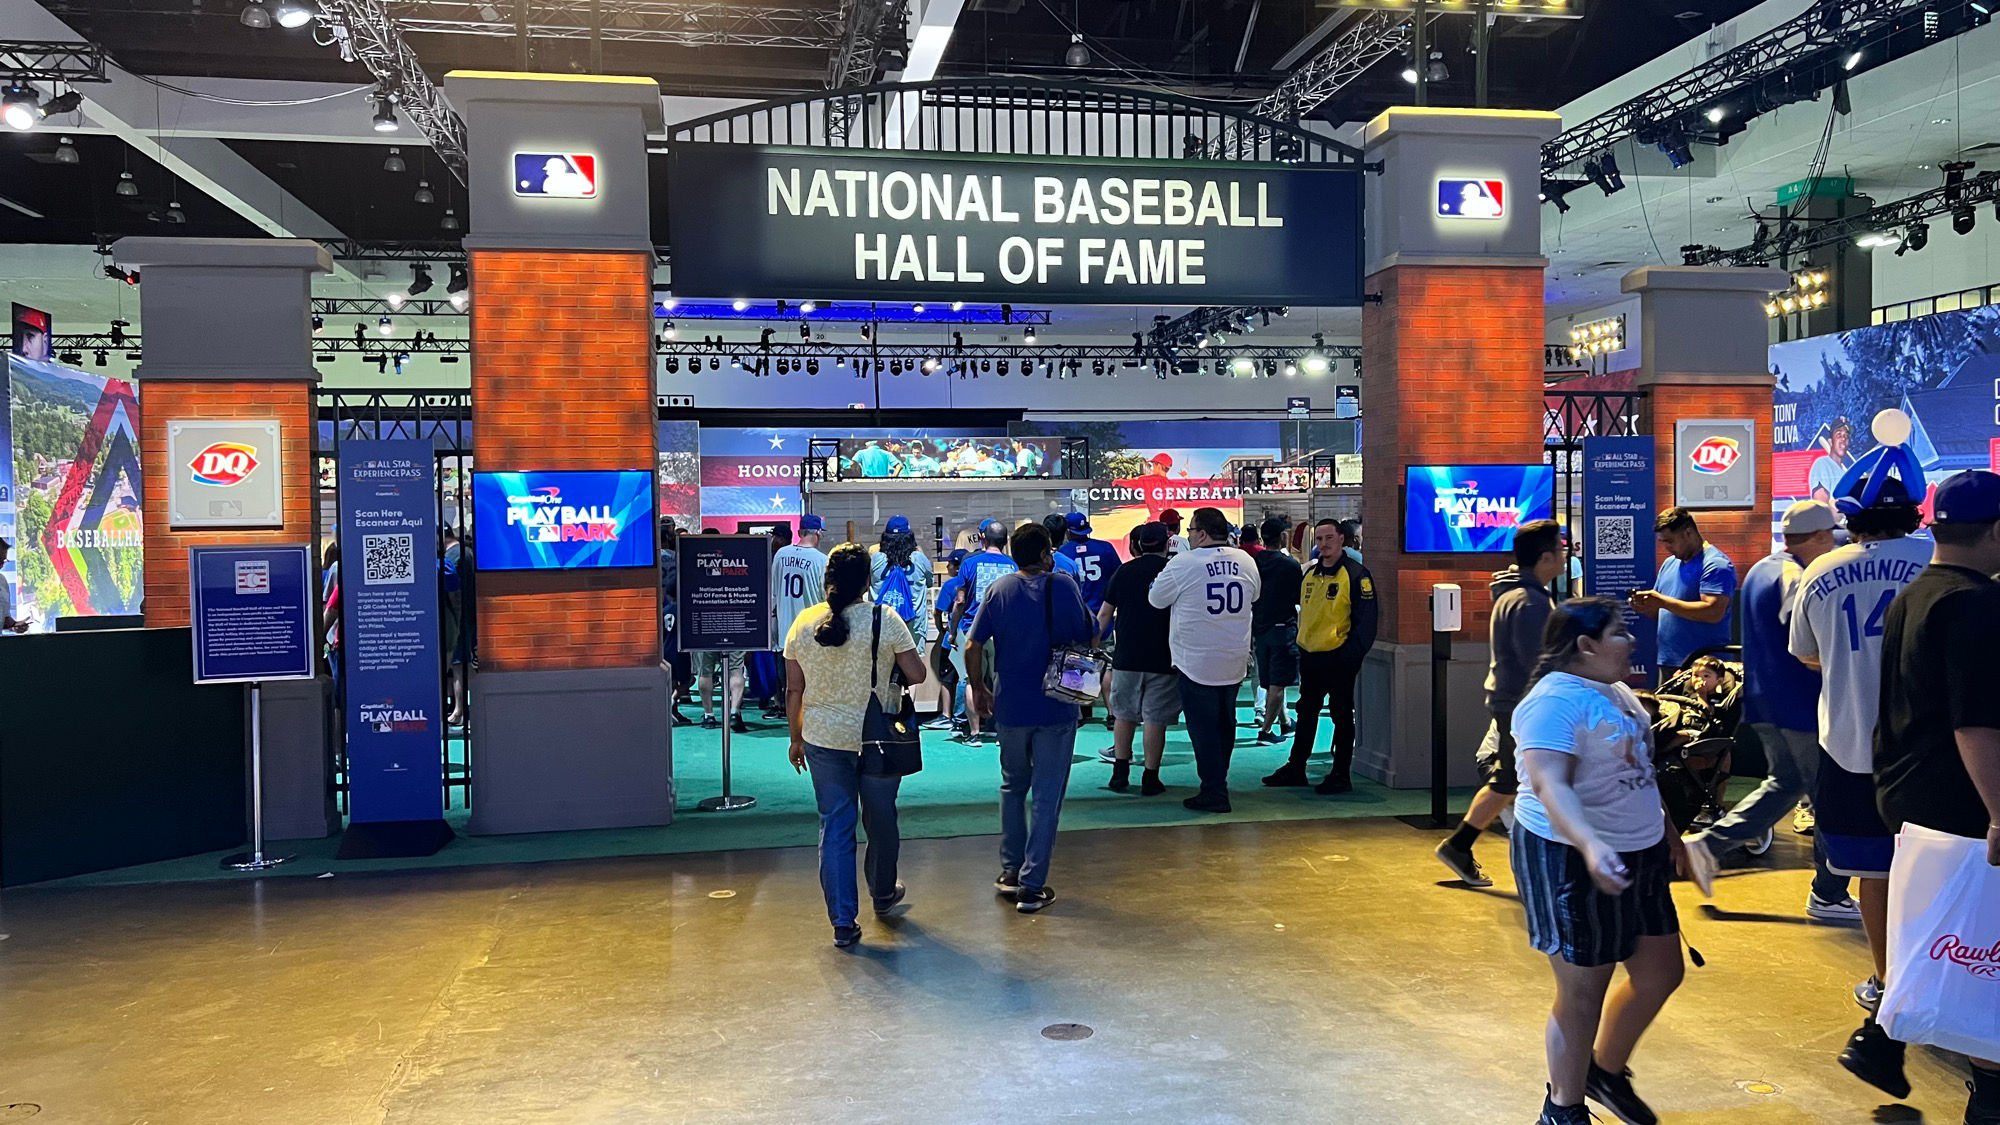 National Baseball Hall of Fame Entrance